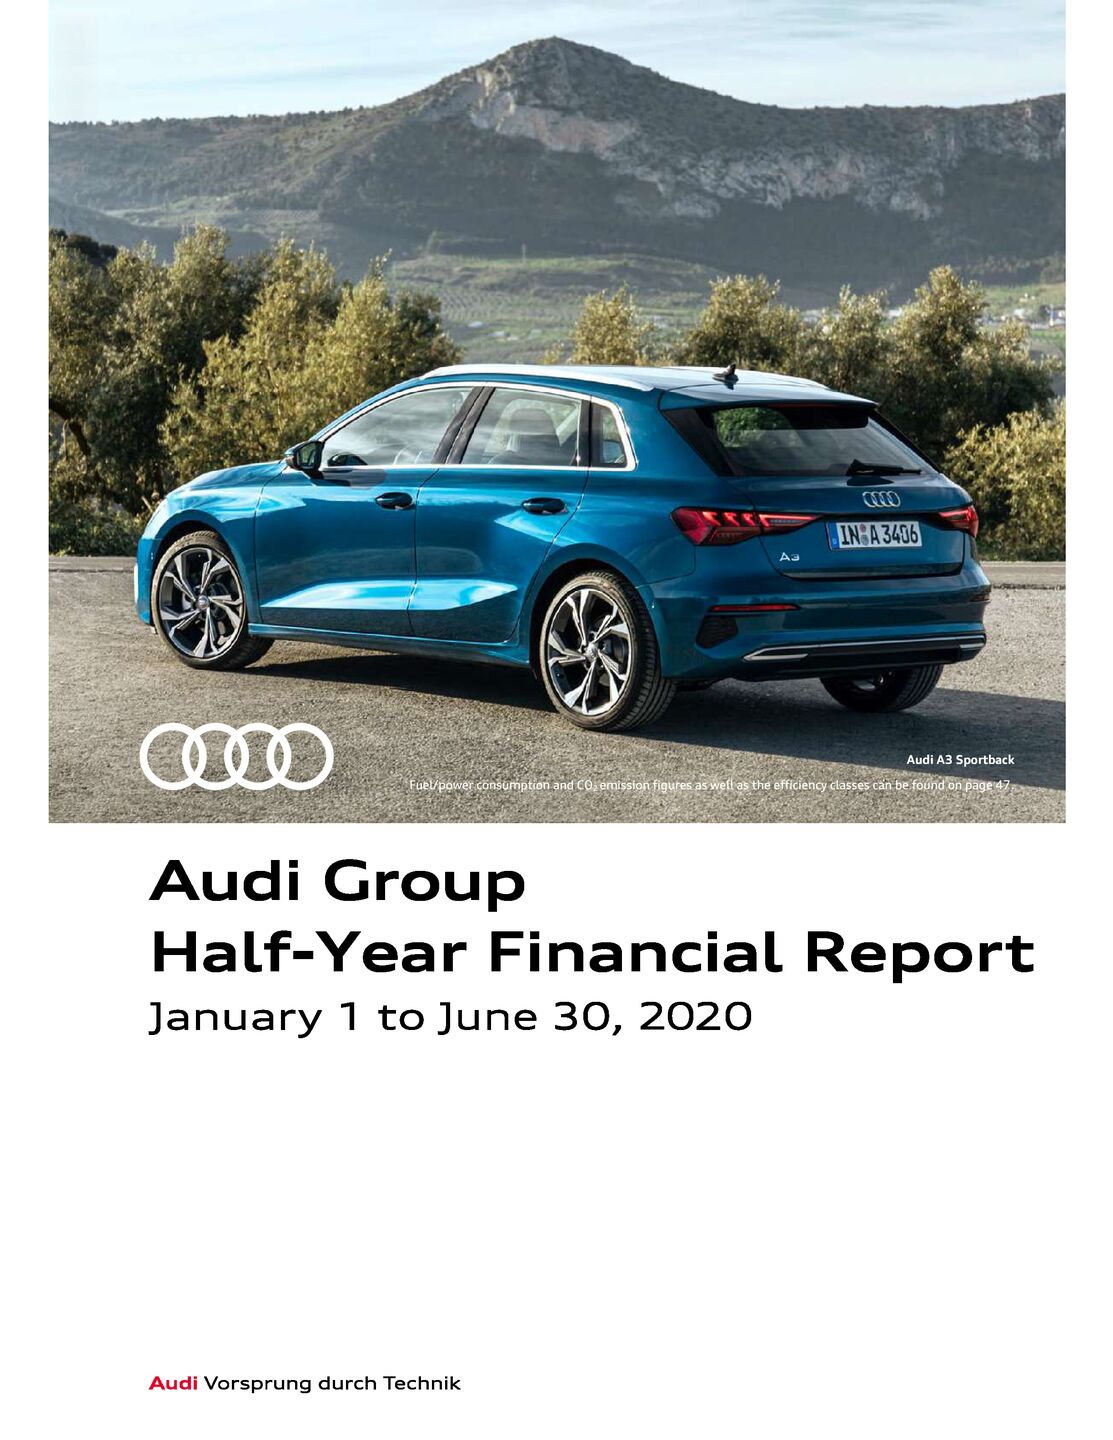 Audi Group Interim Financial Report 2020